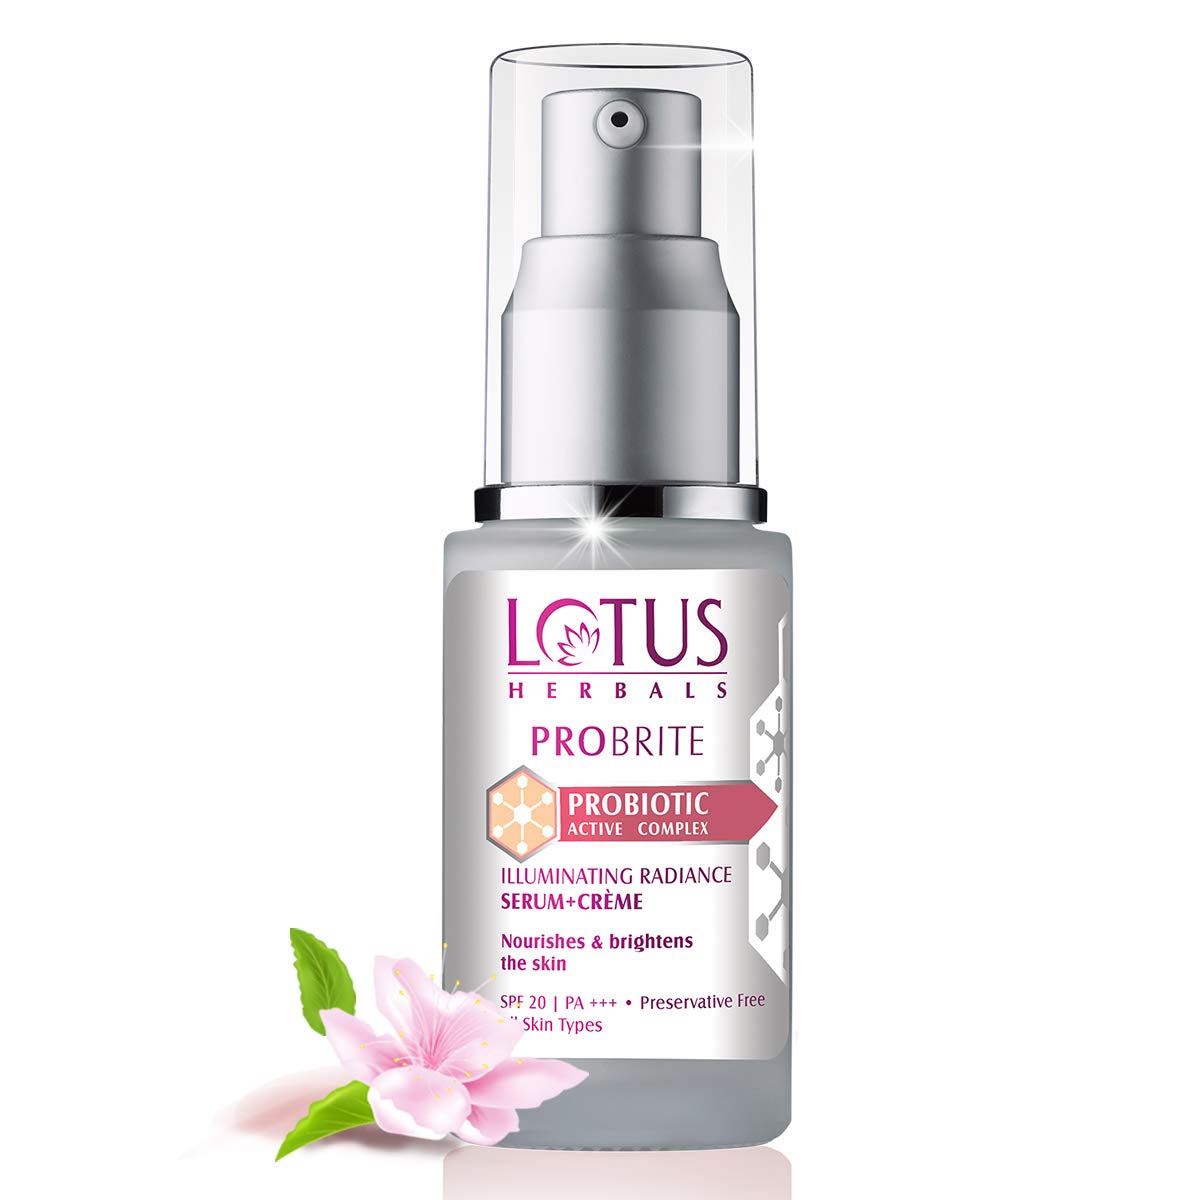 Lotus Herbals Probrite Probiotic Active Complex Illuminating Radiance Serum + Creme (30 ml) Lotus Herbals